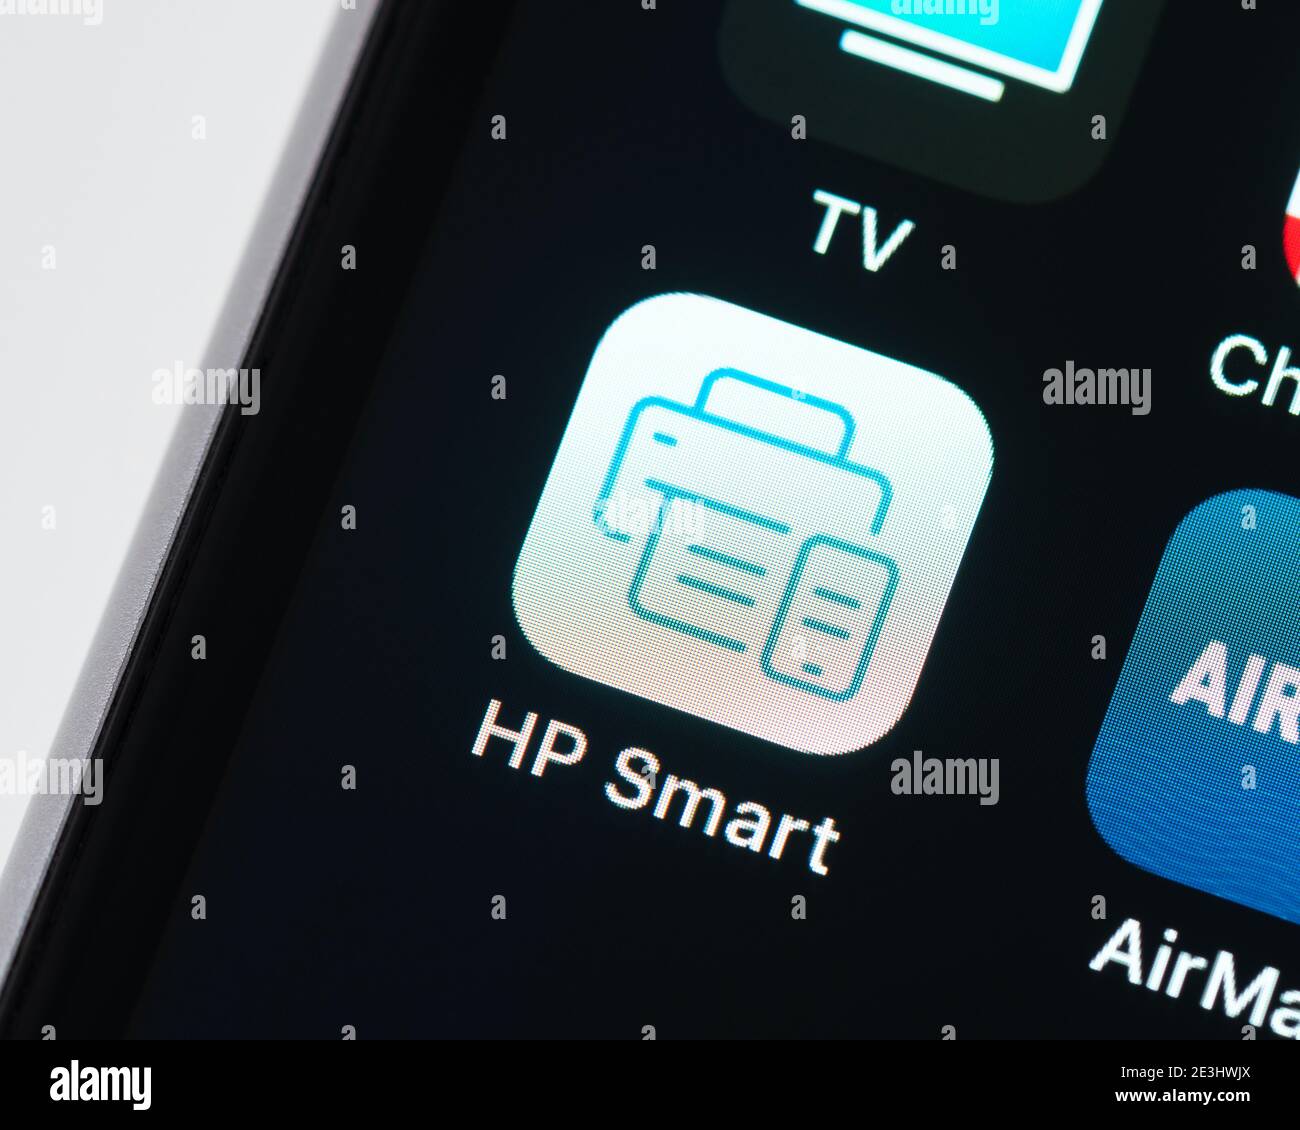 Icona dell'app HP Smart sulla schermata di Apple iPhone. L'app HP Smart  include strumenti per la stampa, la scansione, il controllo dei livelli di  inchiostro e la configurazione della stampante su una